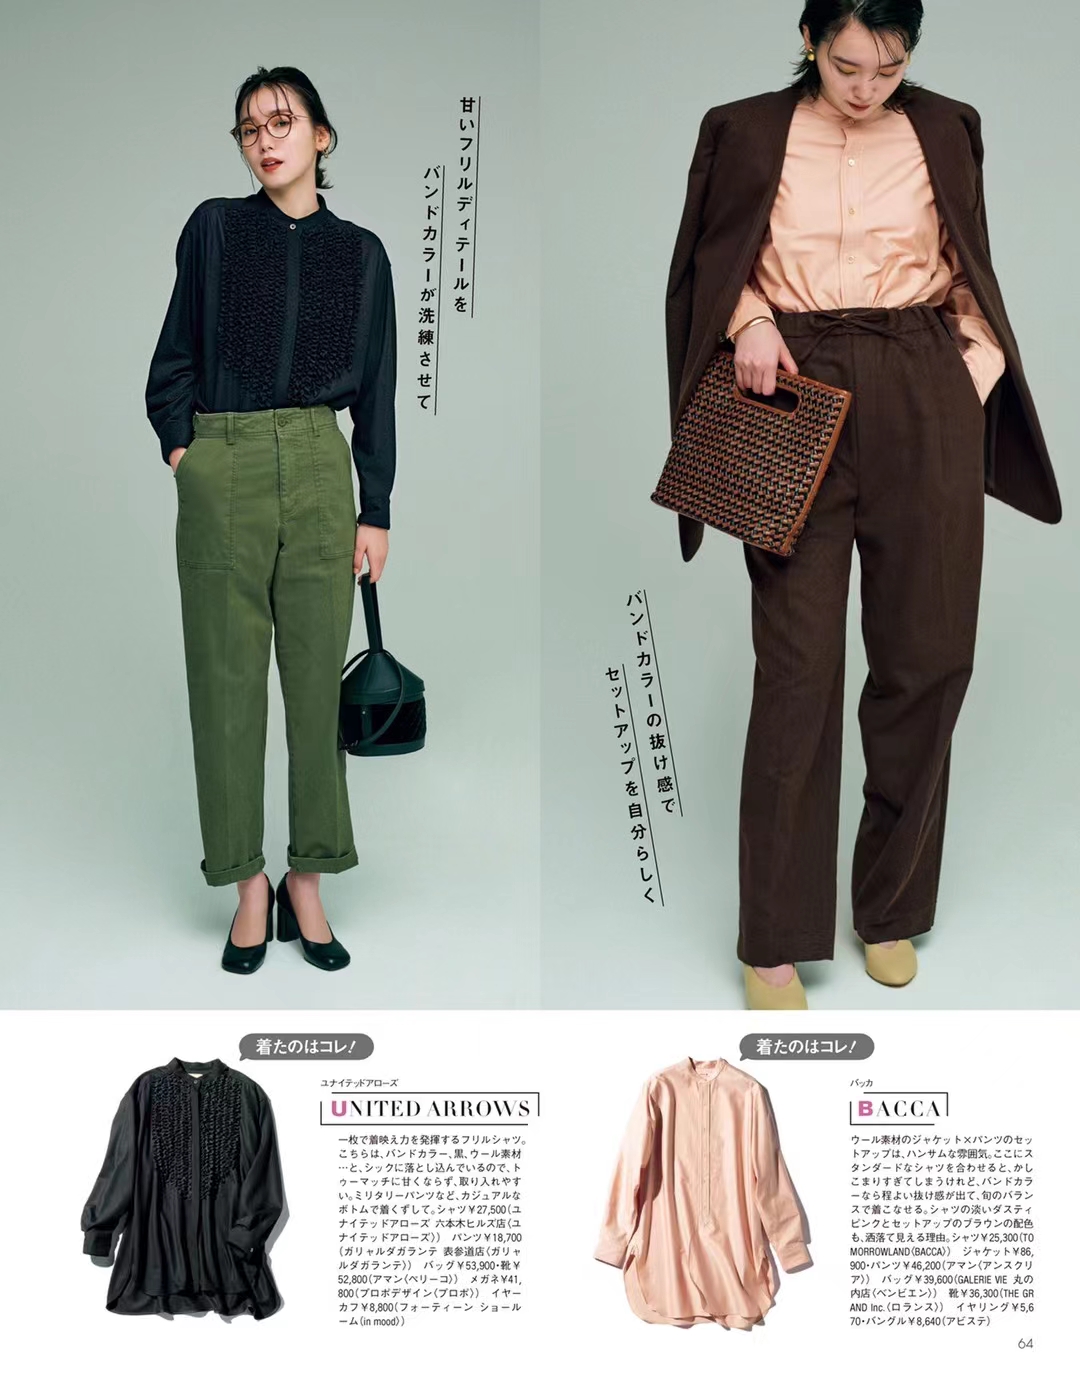 【瑜伽健身上新】 《Oggi》 2021年11月 日本职业女性时尚着装穿搭杂志